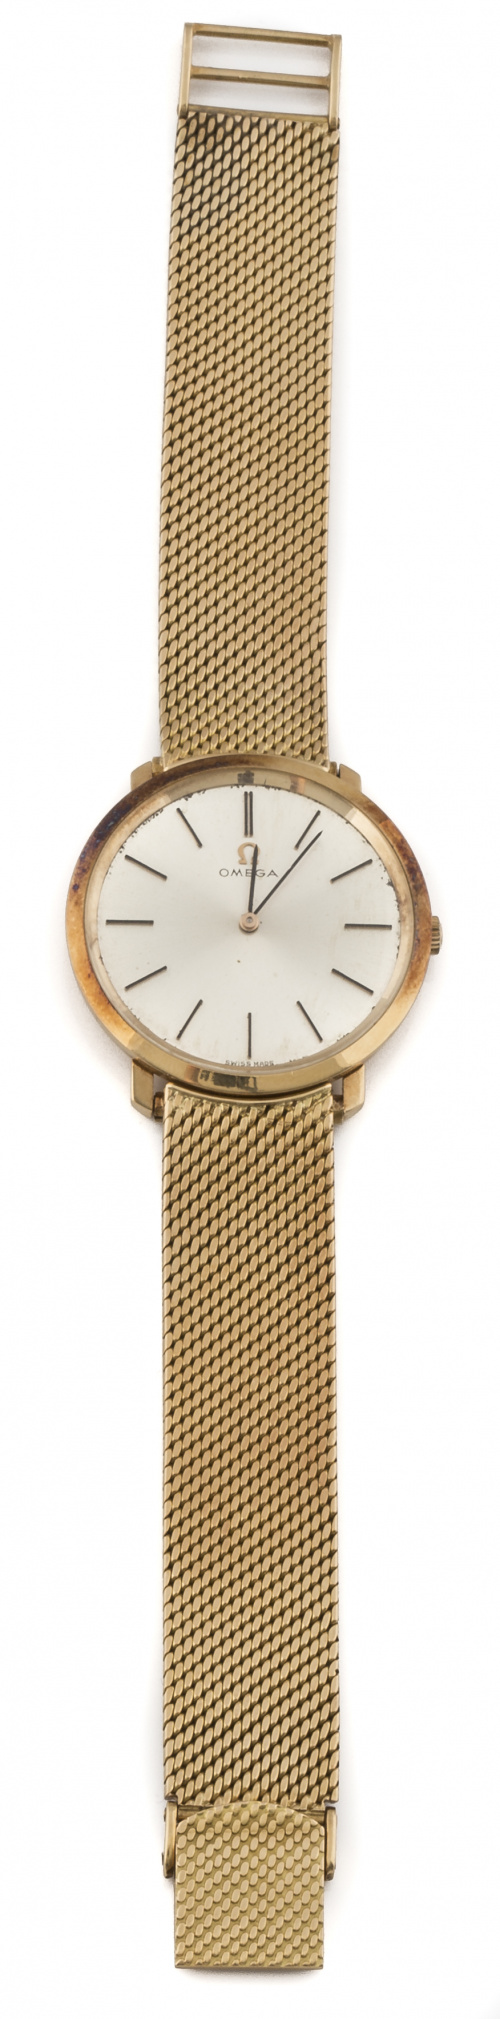 Reloj OMEGA años 60 en oro de 18K.